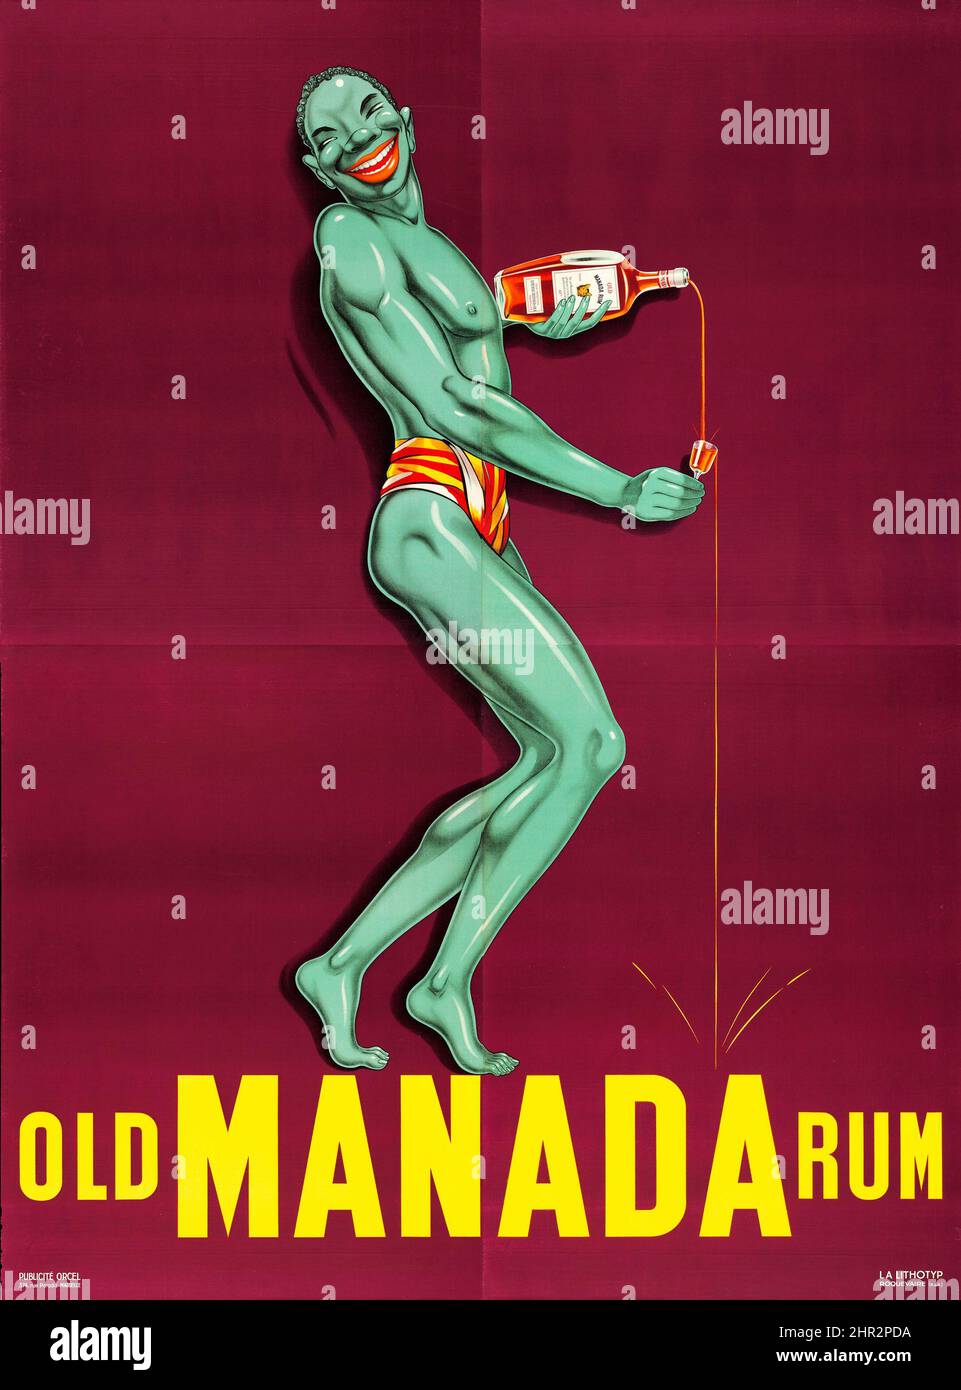 Old Manada Rum (c. 1930s). Publicité française - affiche publicitaire d'alcool vintage. Banque D'Images